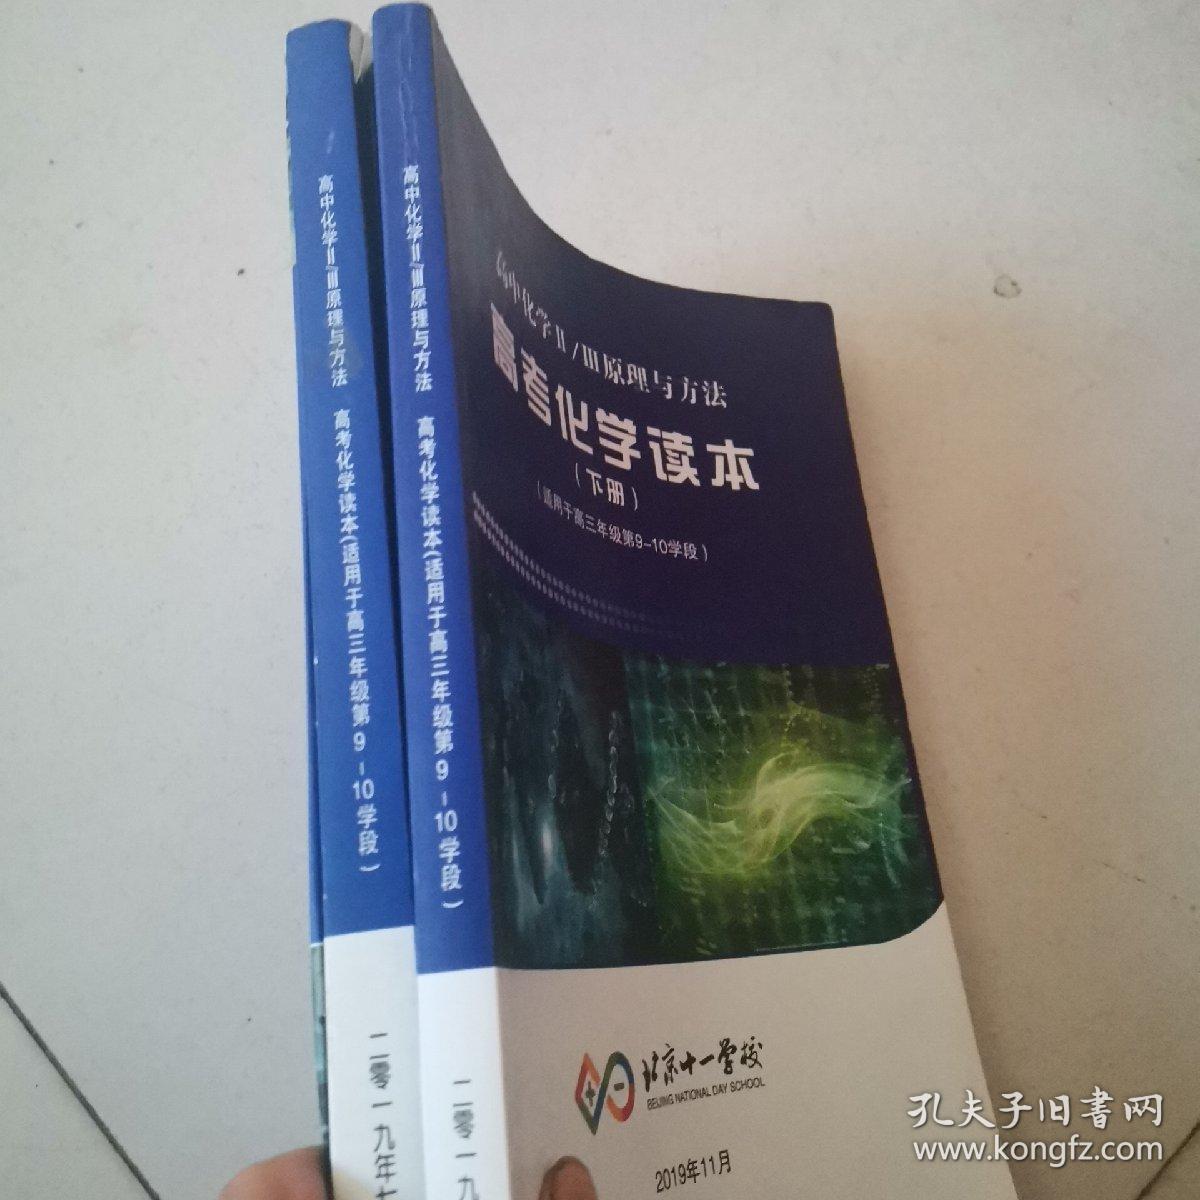 北京十一学校 高中化学II/III原理与方法 高考化学读本 上下册 适用于高三年级第9-10学段（内页有勾画）